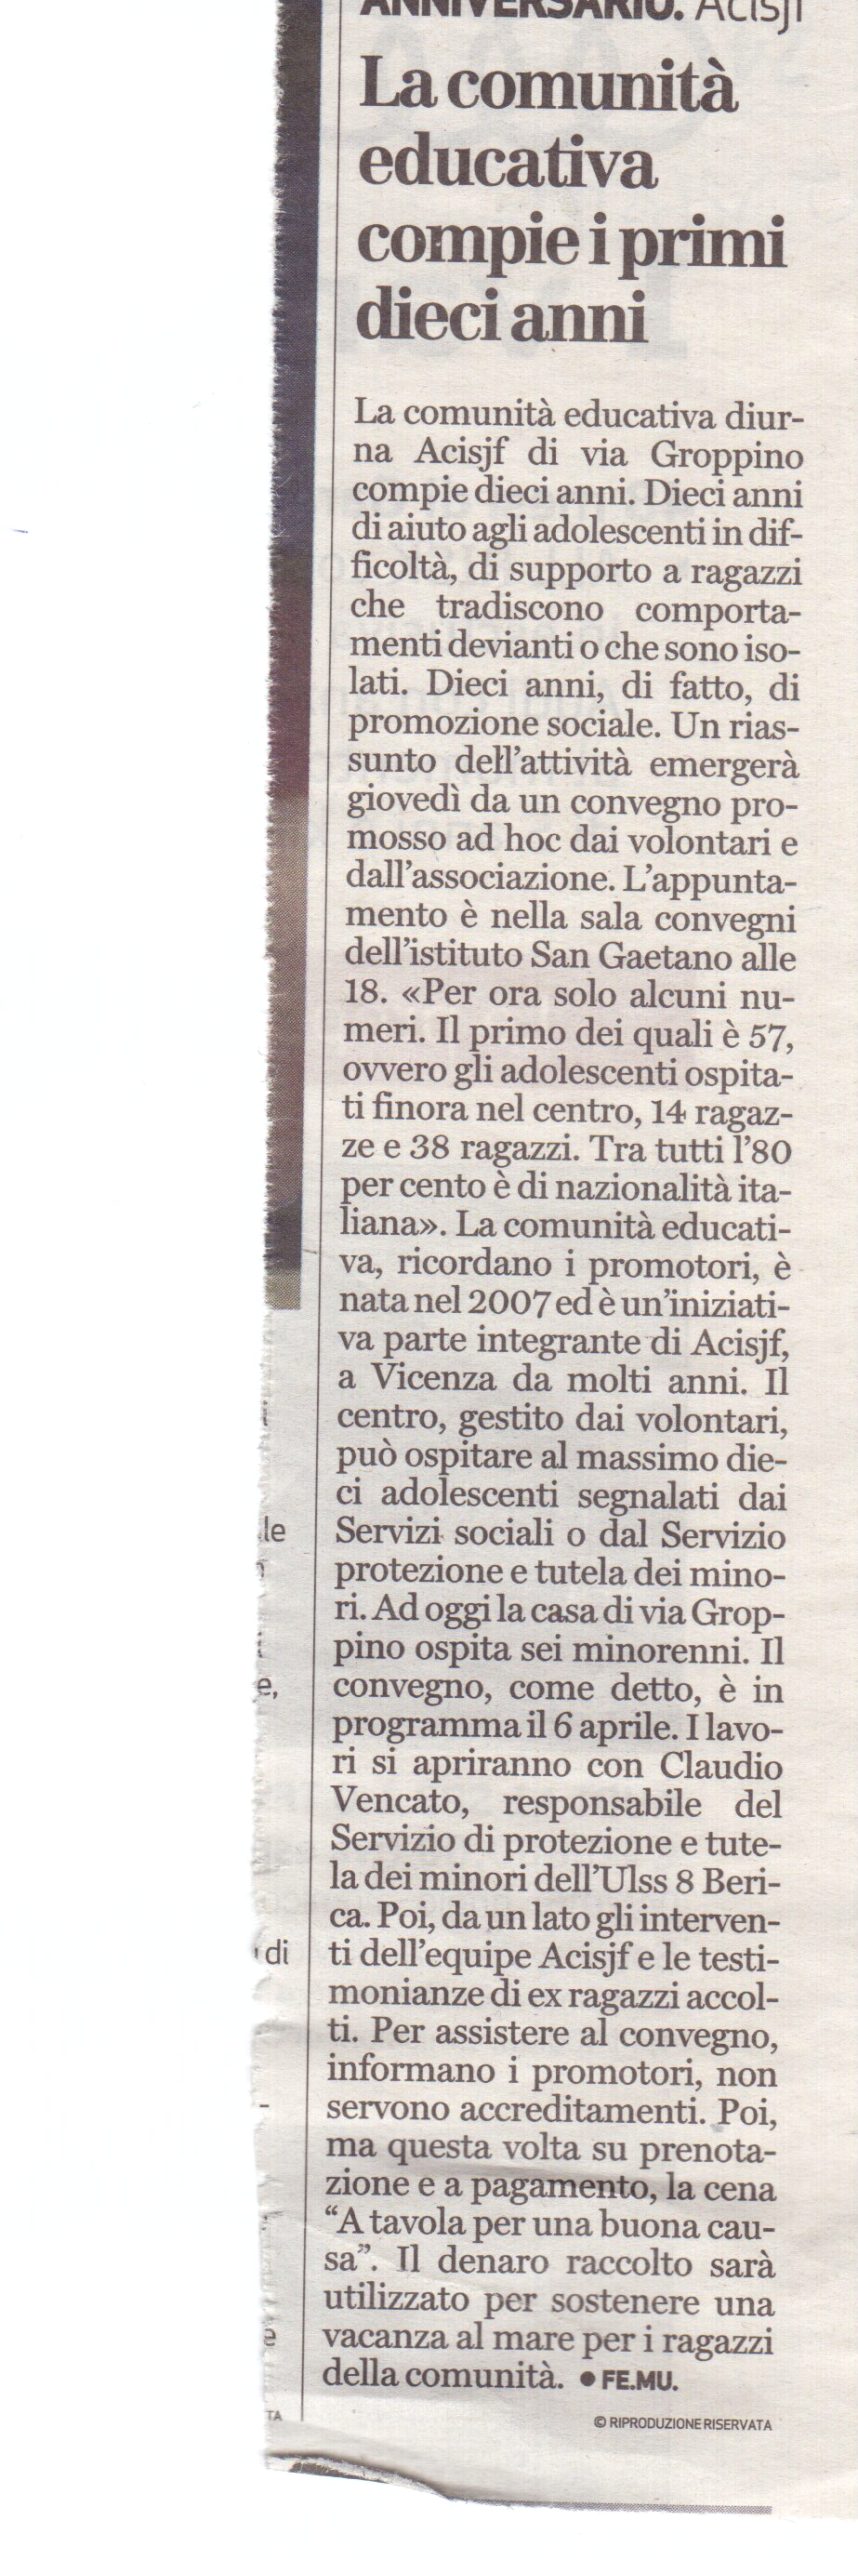 Al momento stai visualizzando Aromi & Sapori 26/10/2017 visto dal Giornale di Vicenza